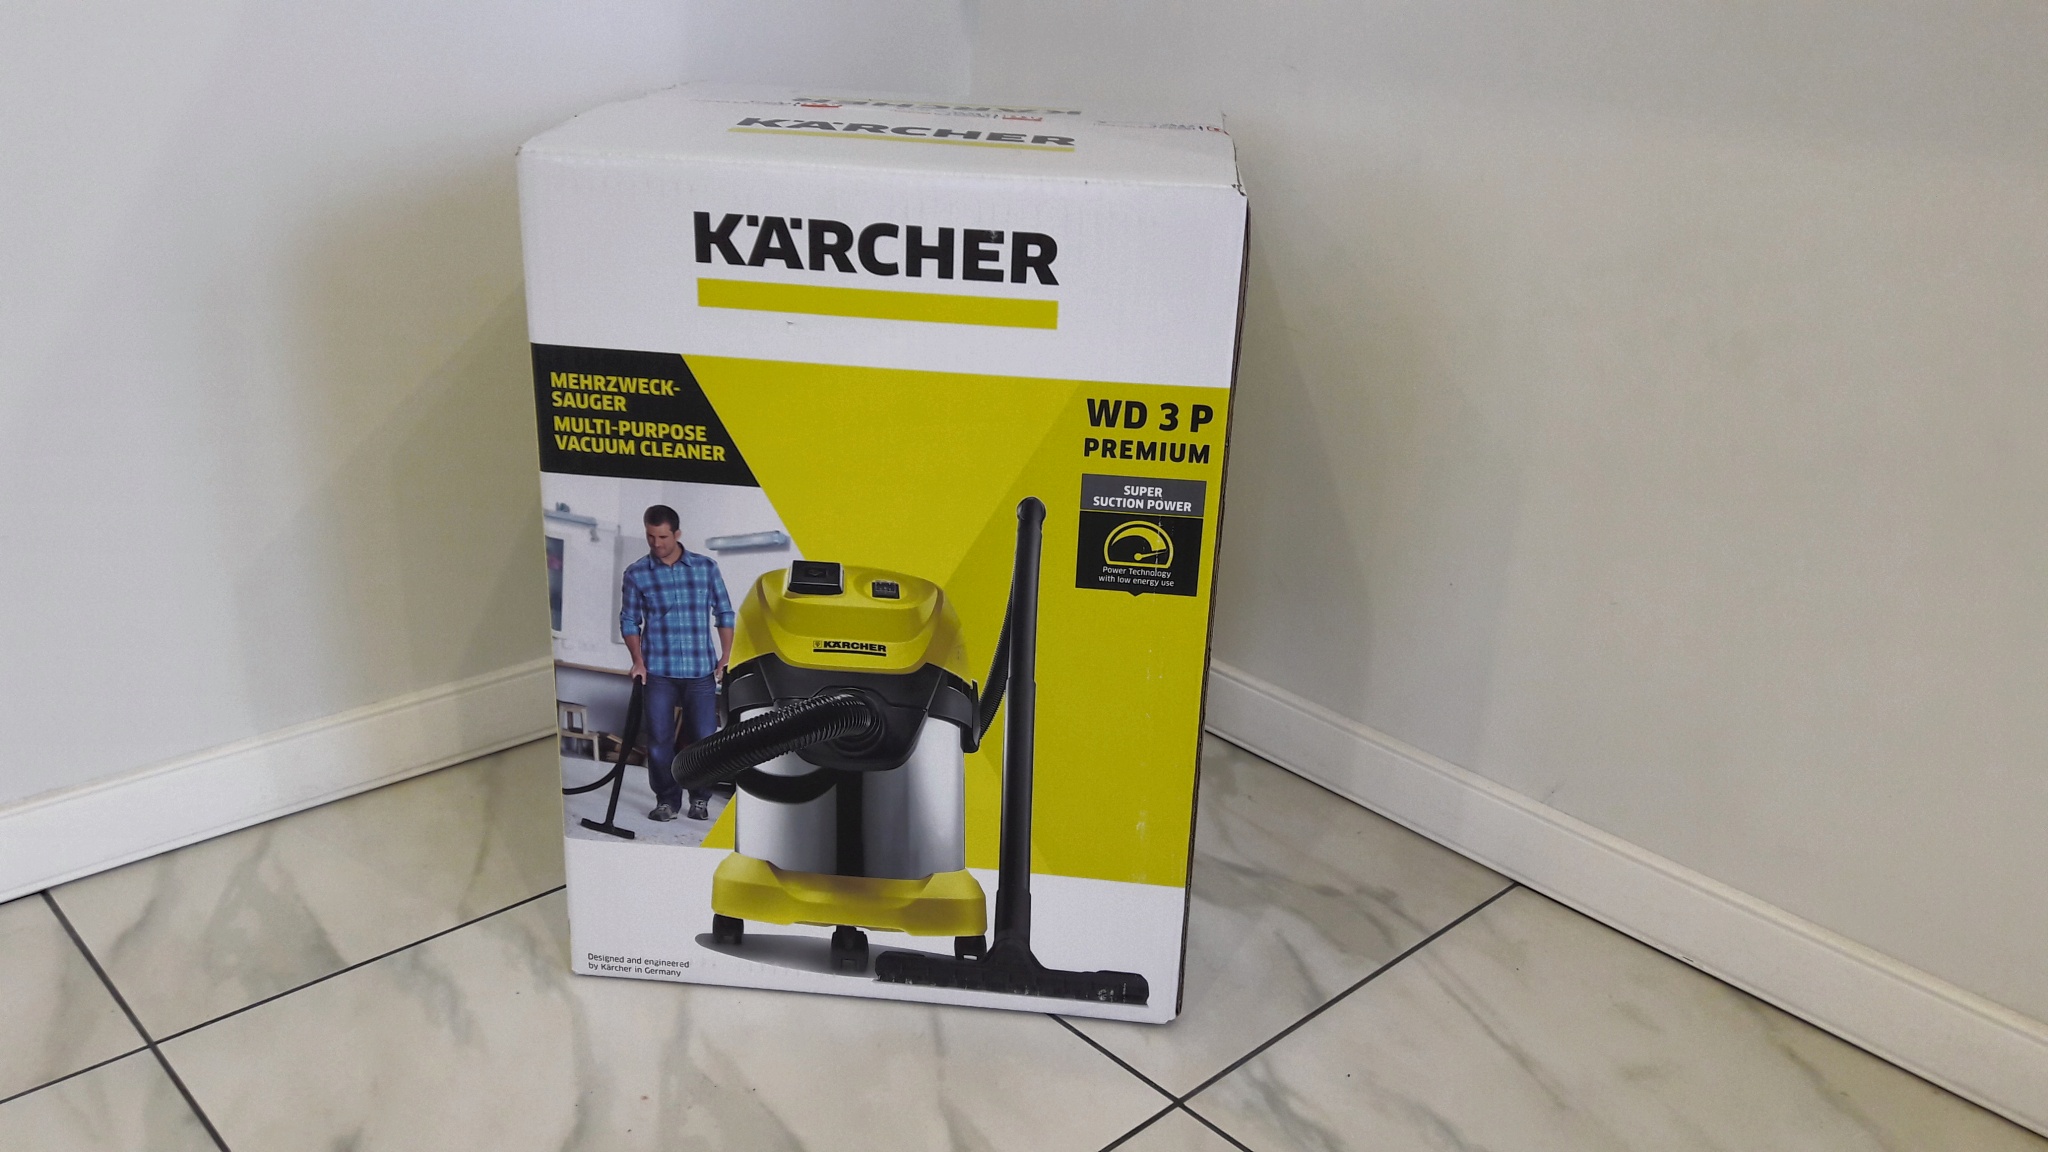 Karcher wd 3 premium купить. Karcher WD 3p комплектация. Karcher WD 3 P Premium. Karcher wd3 p Premium габариты. Karcher WD 3 P Premium аксессуары.